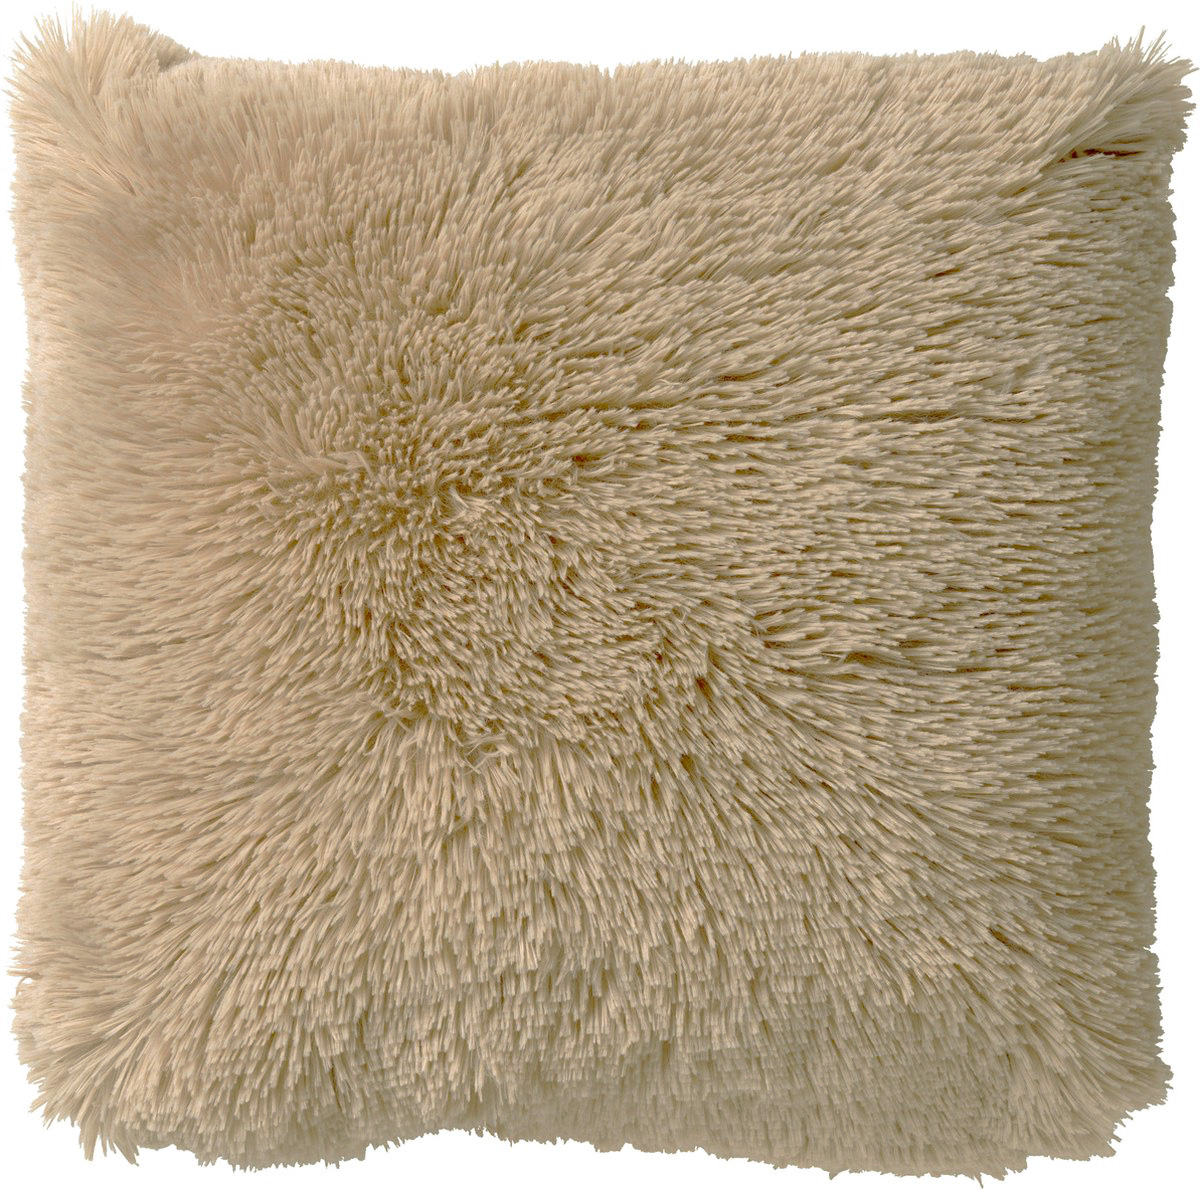 FLUFFY - Cushion 45x45 cm Pumice Stone - beige